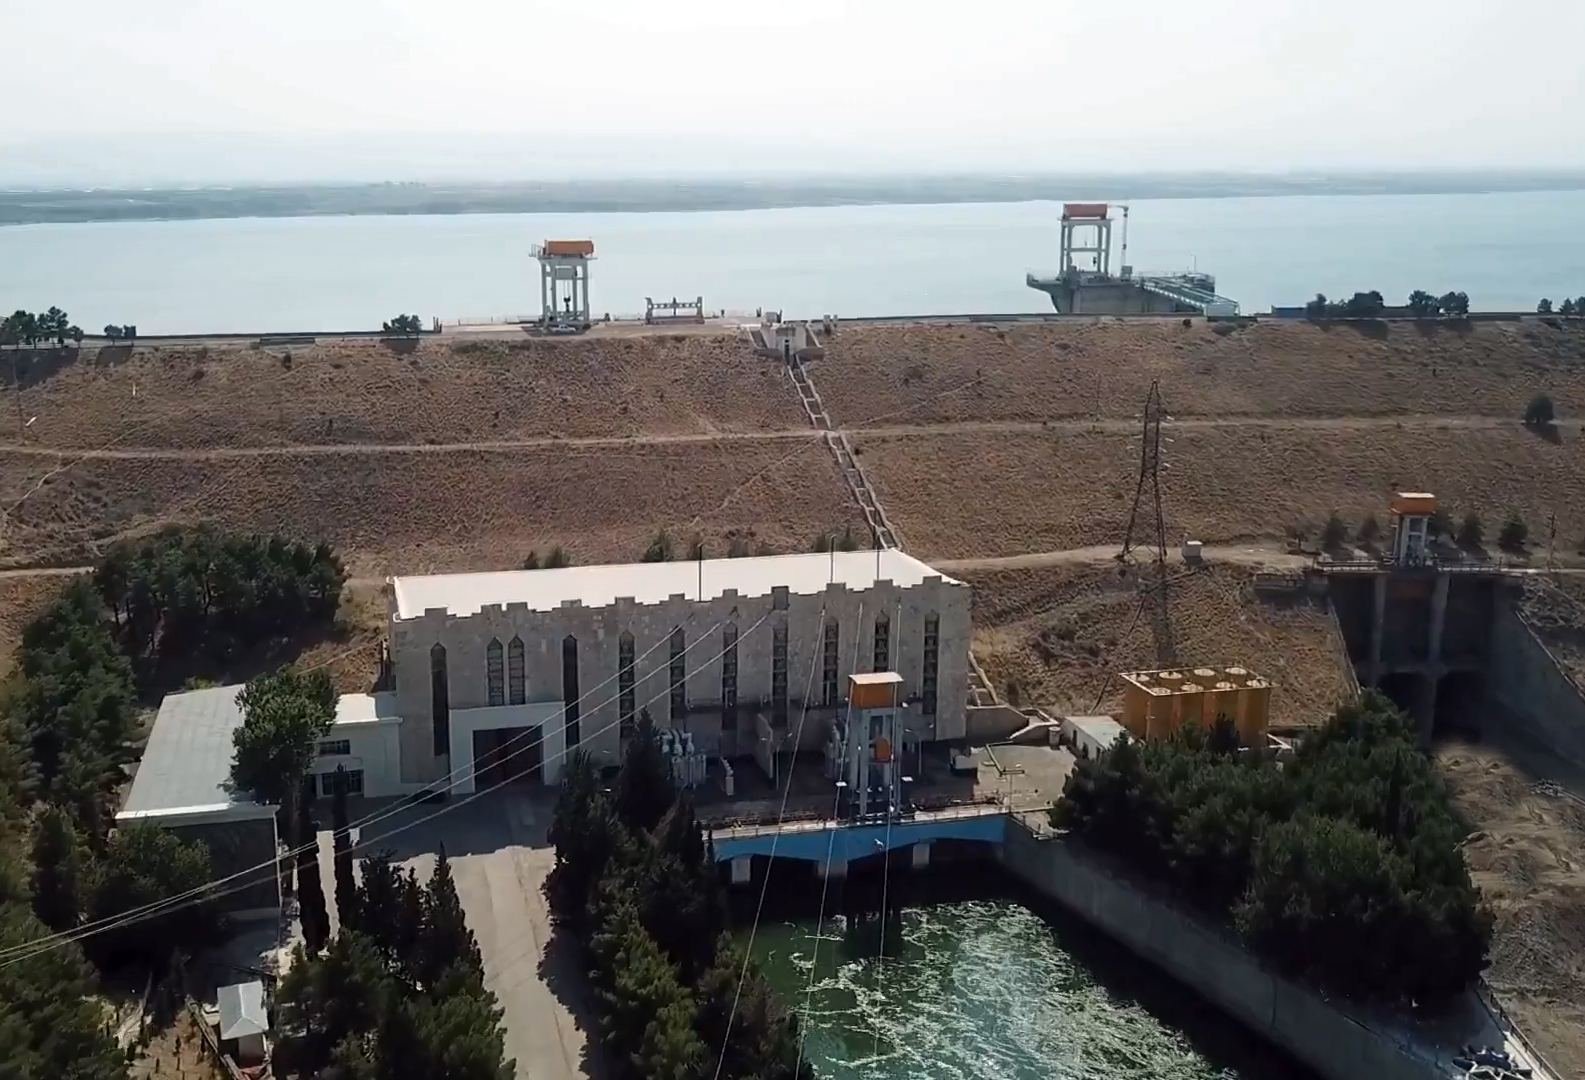 Ölkənin ikinci böyük su elektrik stansiyasında təmir aparılır (FOTO/VİDEO)